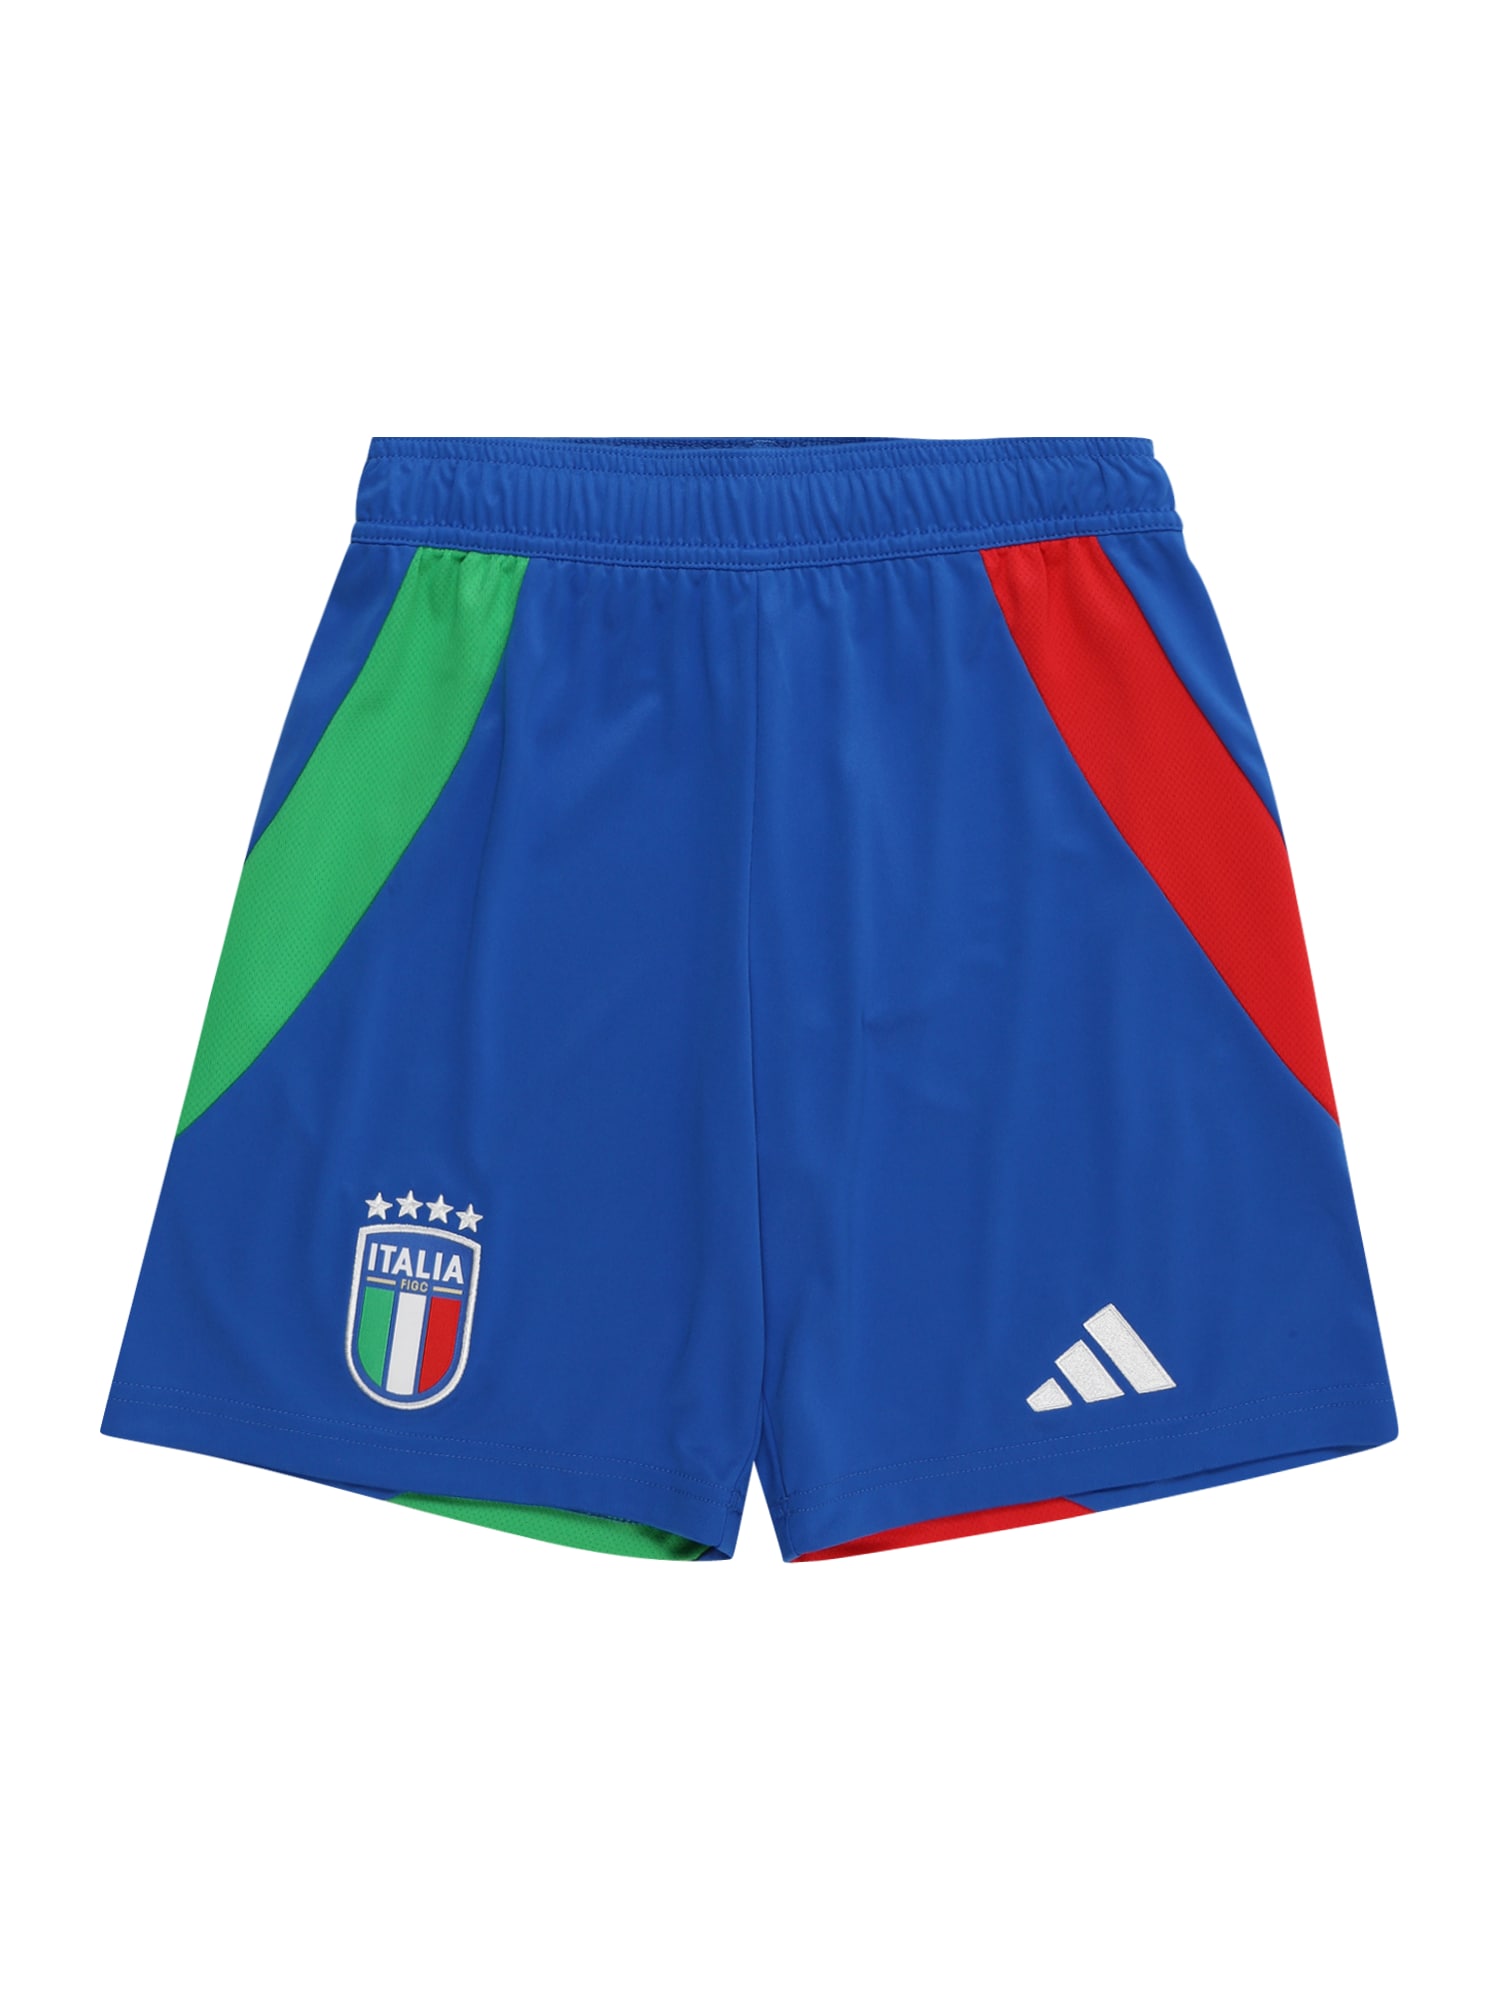 ADIDAS PERFORMANCE Sportinės kelnės 'Italy 24 Away' mėlyna / žalia / raudona / balta